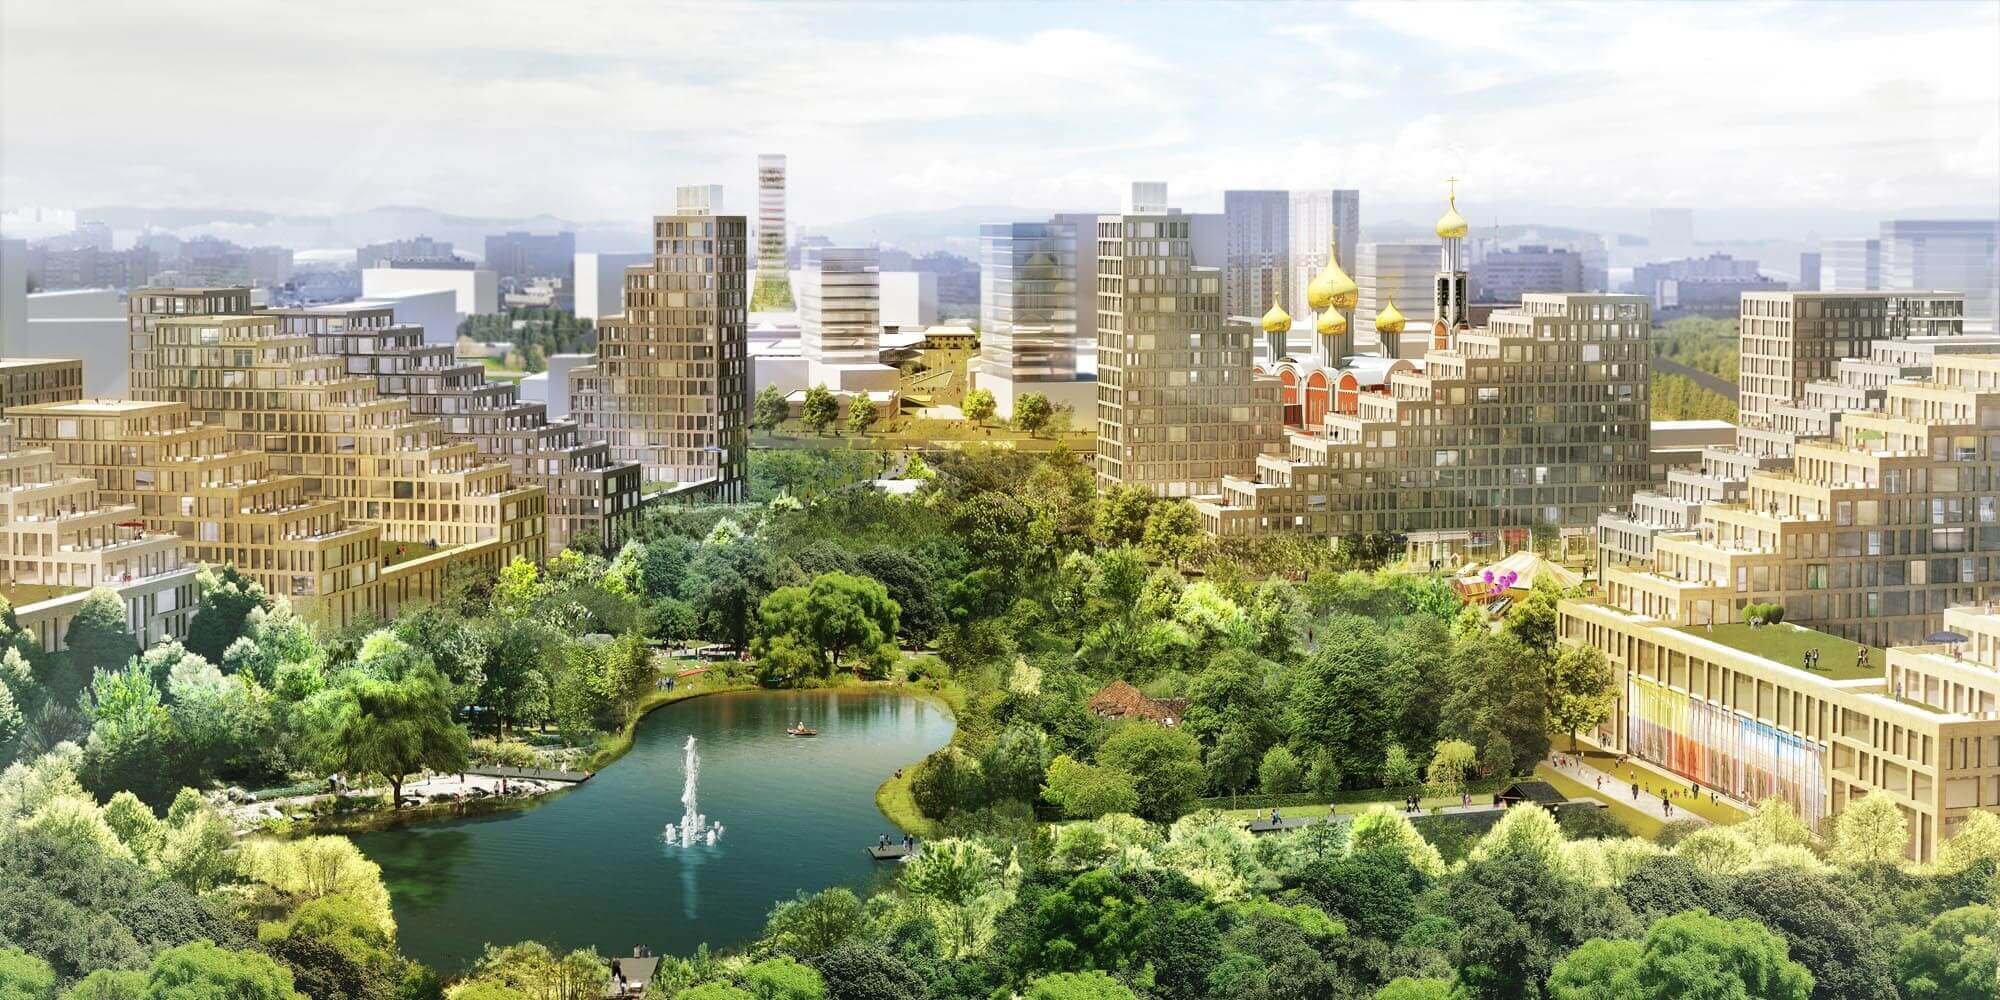 Odintsovo 2020 Eco-City Proposal